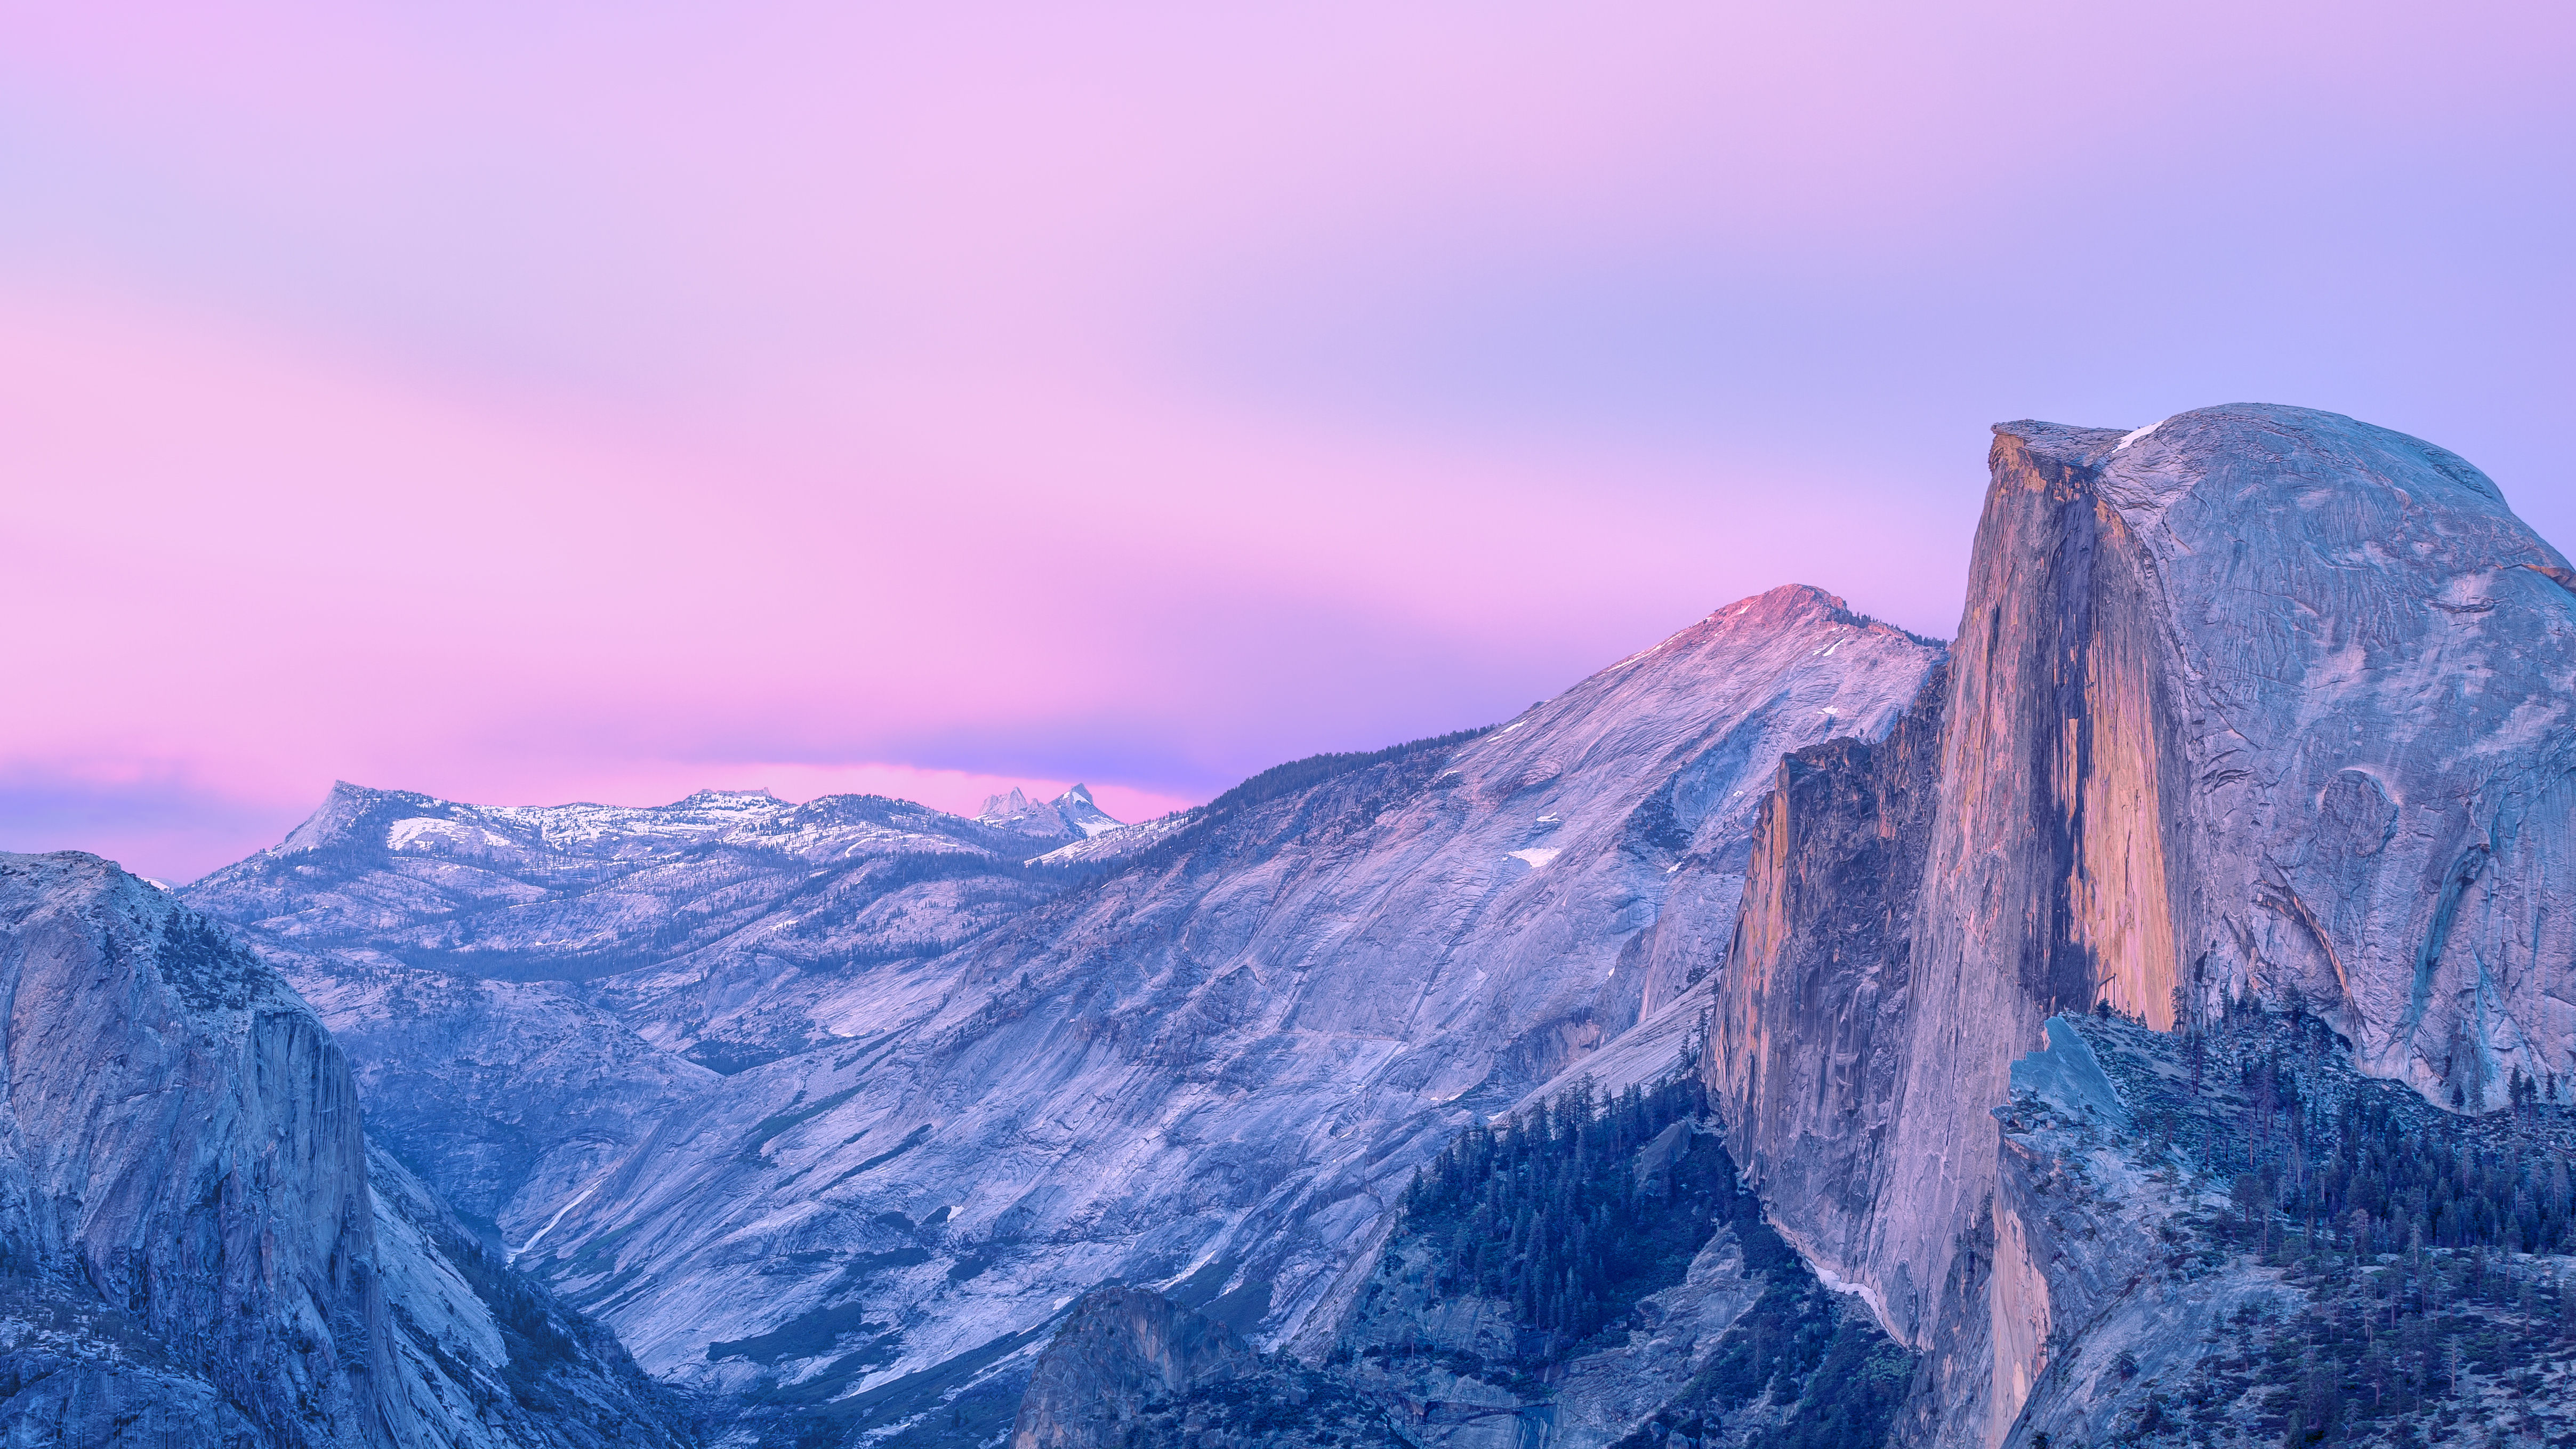 Muốn thay đổi vẻ bề ngoài của hệ điều hành Mac của bạn? Vậy thì hãy thử ngay bộ sưu tập những hình nền OS X Yosemite wallpapers độc đáo với những màu sắc và hình ảnh tuyệt đẹp! Thật tuyệt vời khi bạn có thể trang trí cho màn hình của mình theo ý thích mà không cần phải có bất kỳ chuyên môn thiết kế nào!